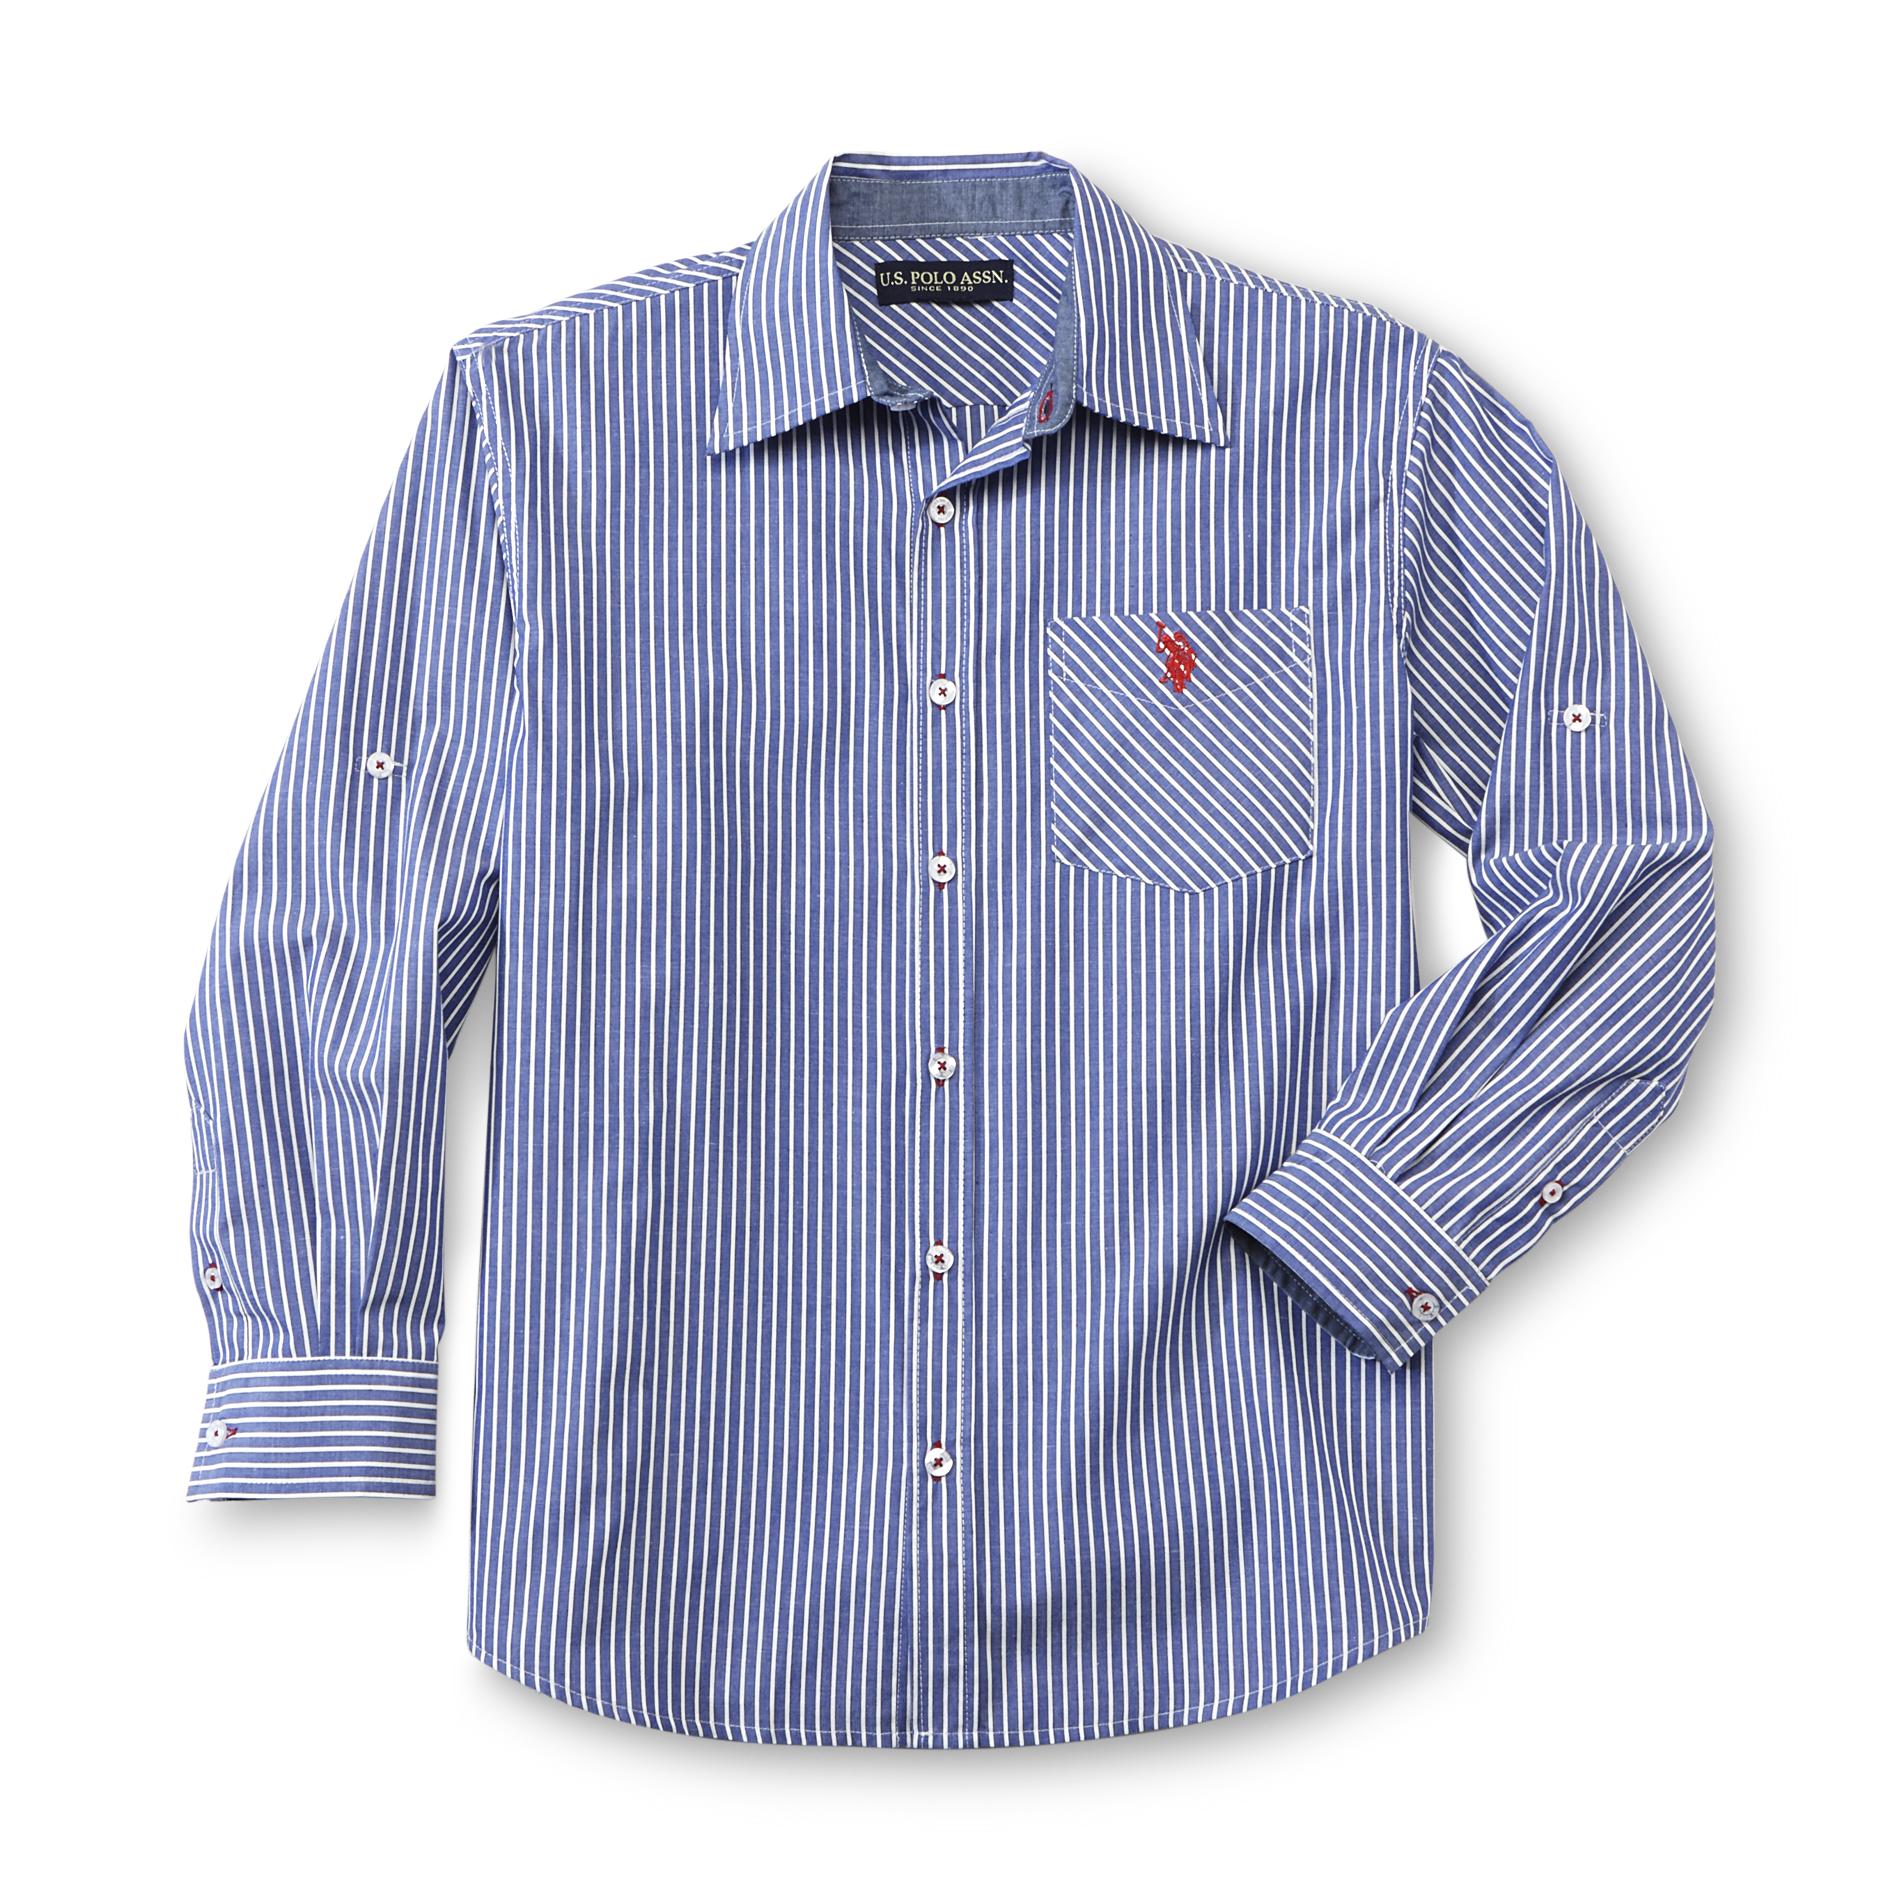 U.S. Polo Assn. Boy's Tab-Sleeve Woven Shirt - Stripes